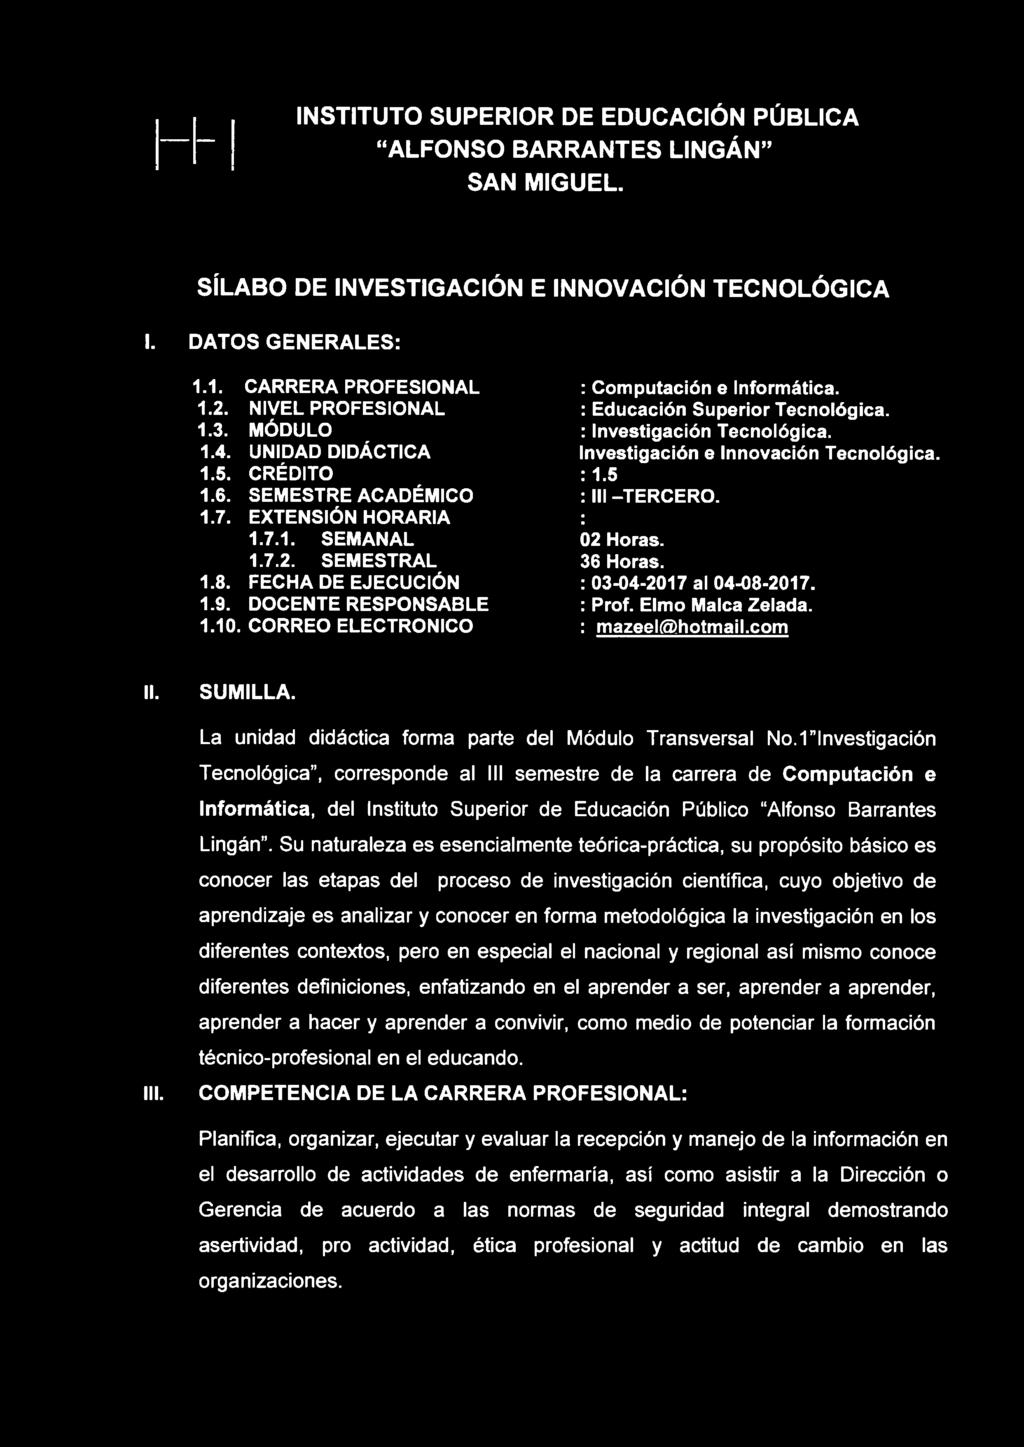 1 "Investigación Tecnológica, corresponde al III semestre de la carrera de Computación e Informática, del Instituto Superior de Educación Público Alfonso Barrantes Lingán.